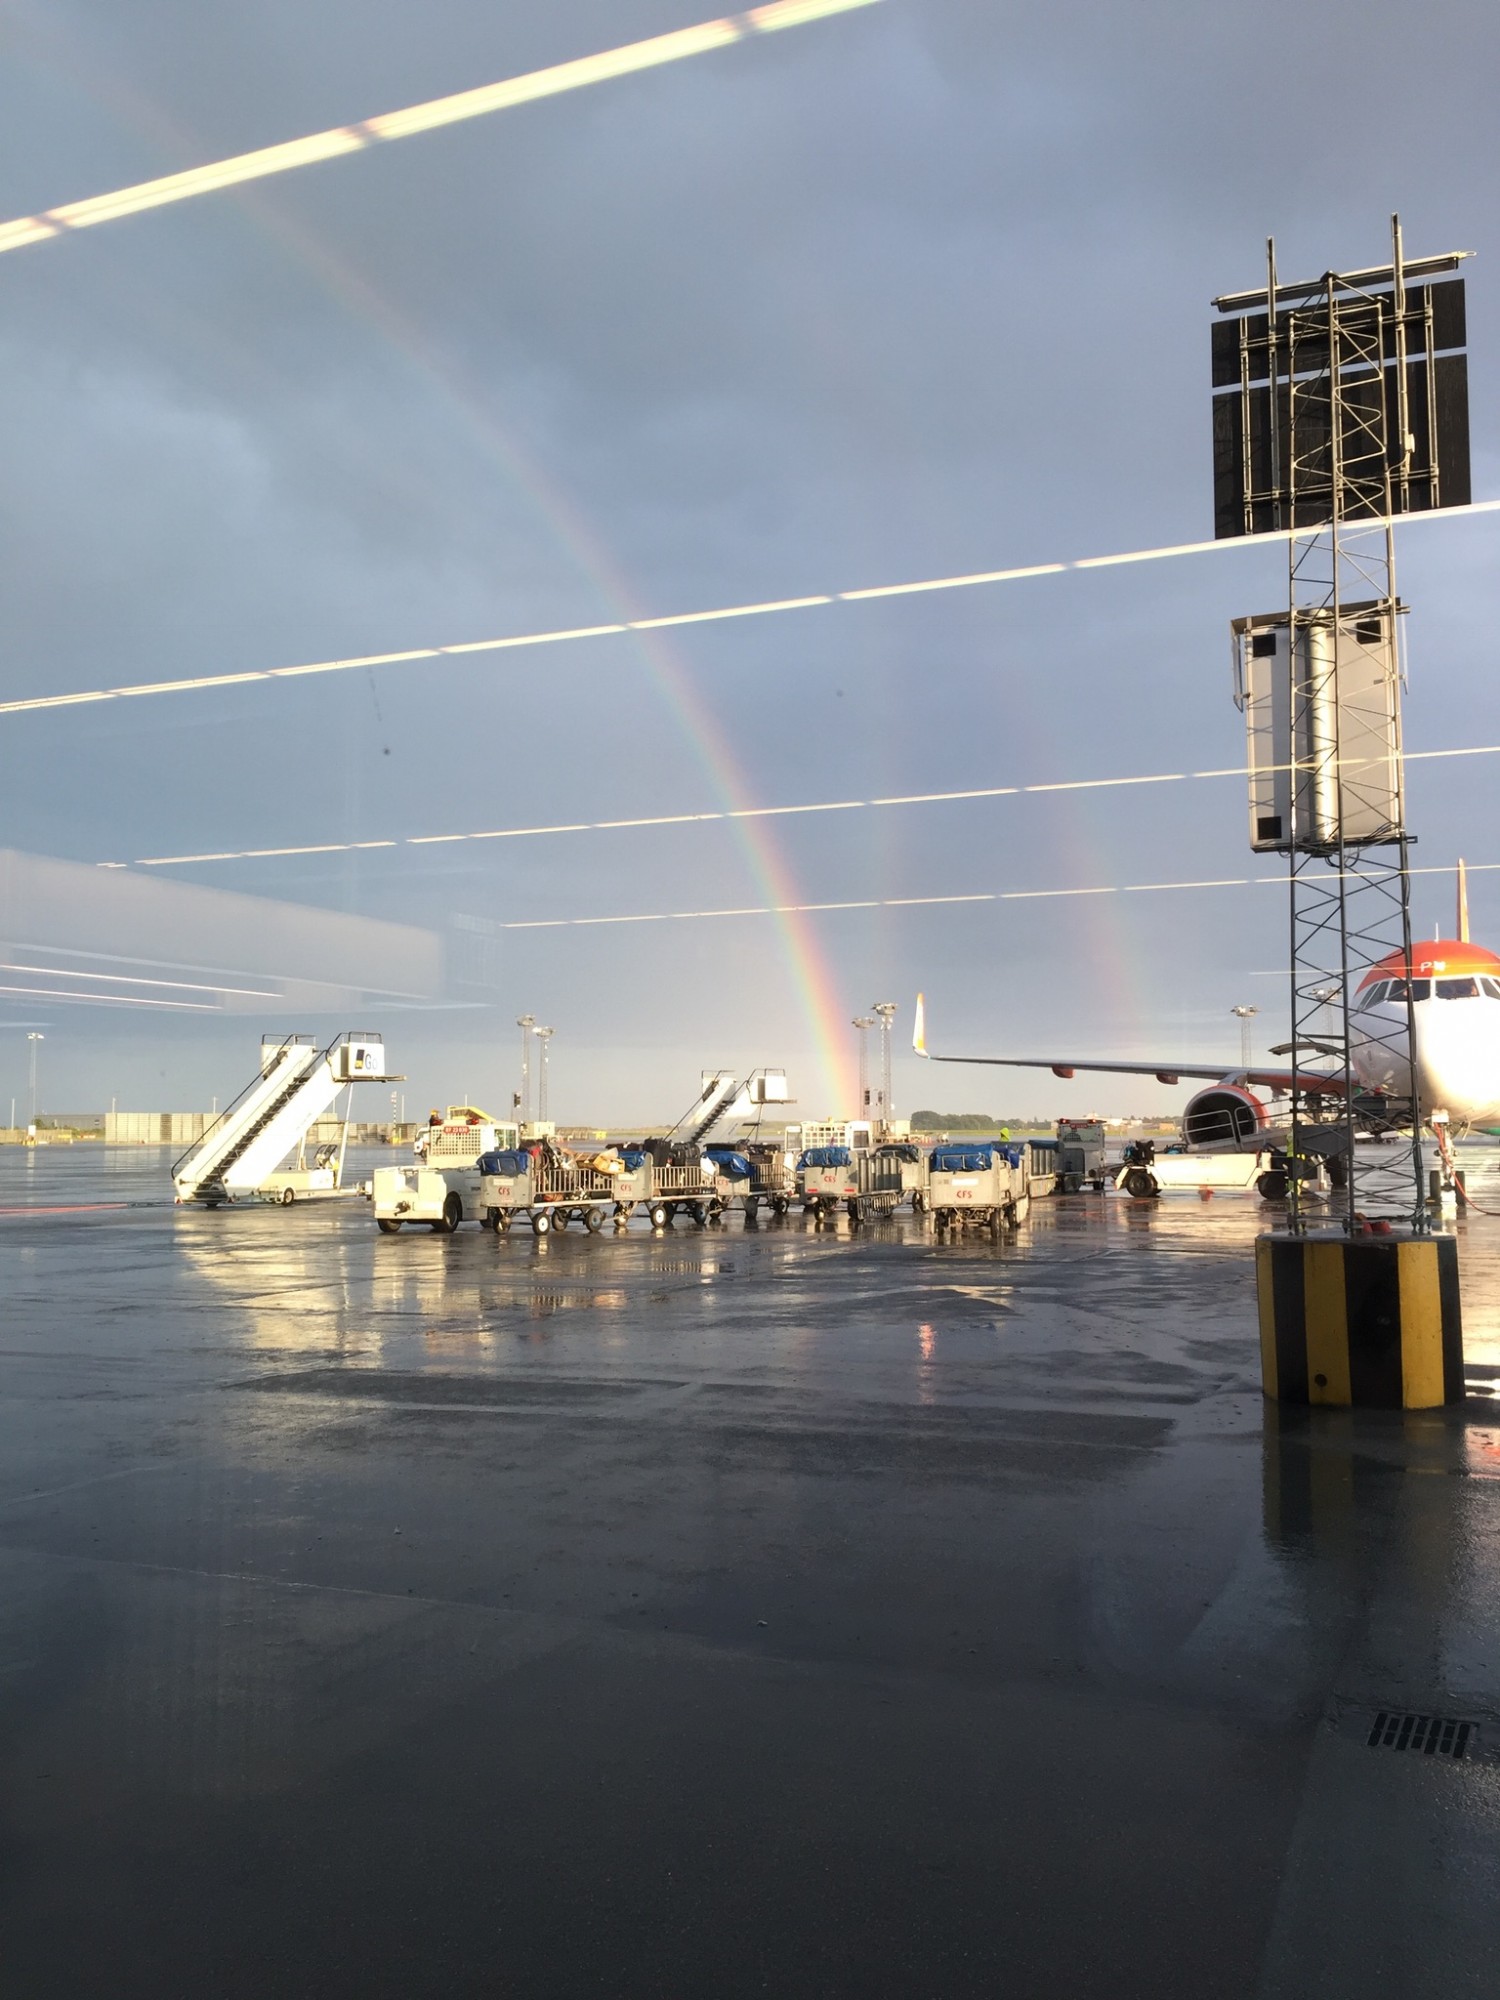 Velkommen hjem til Danmark med regnvejr og regnbue